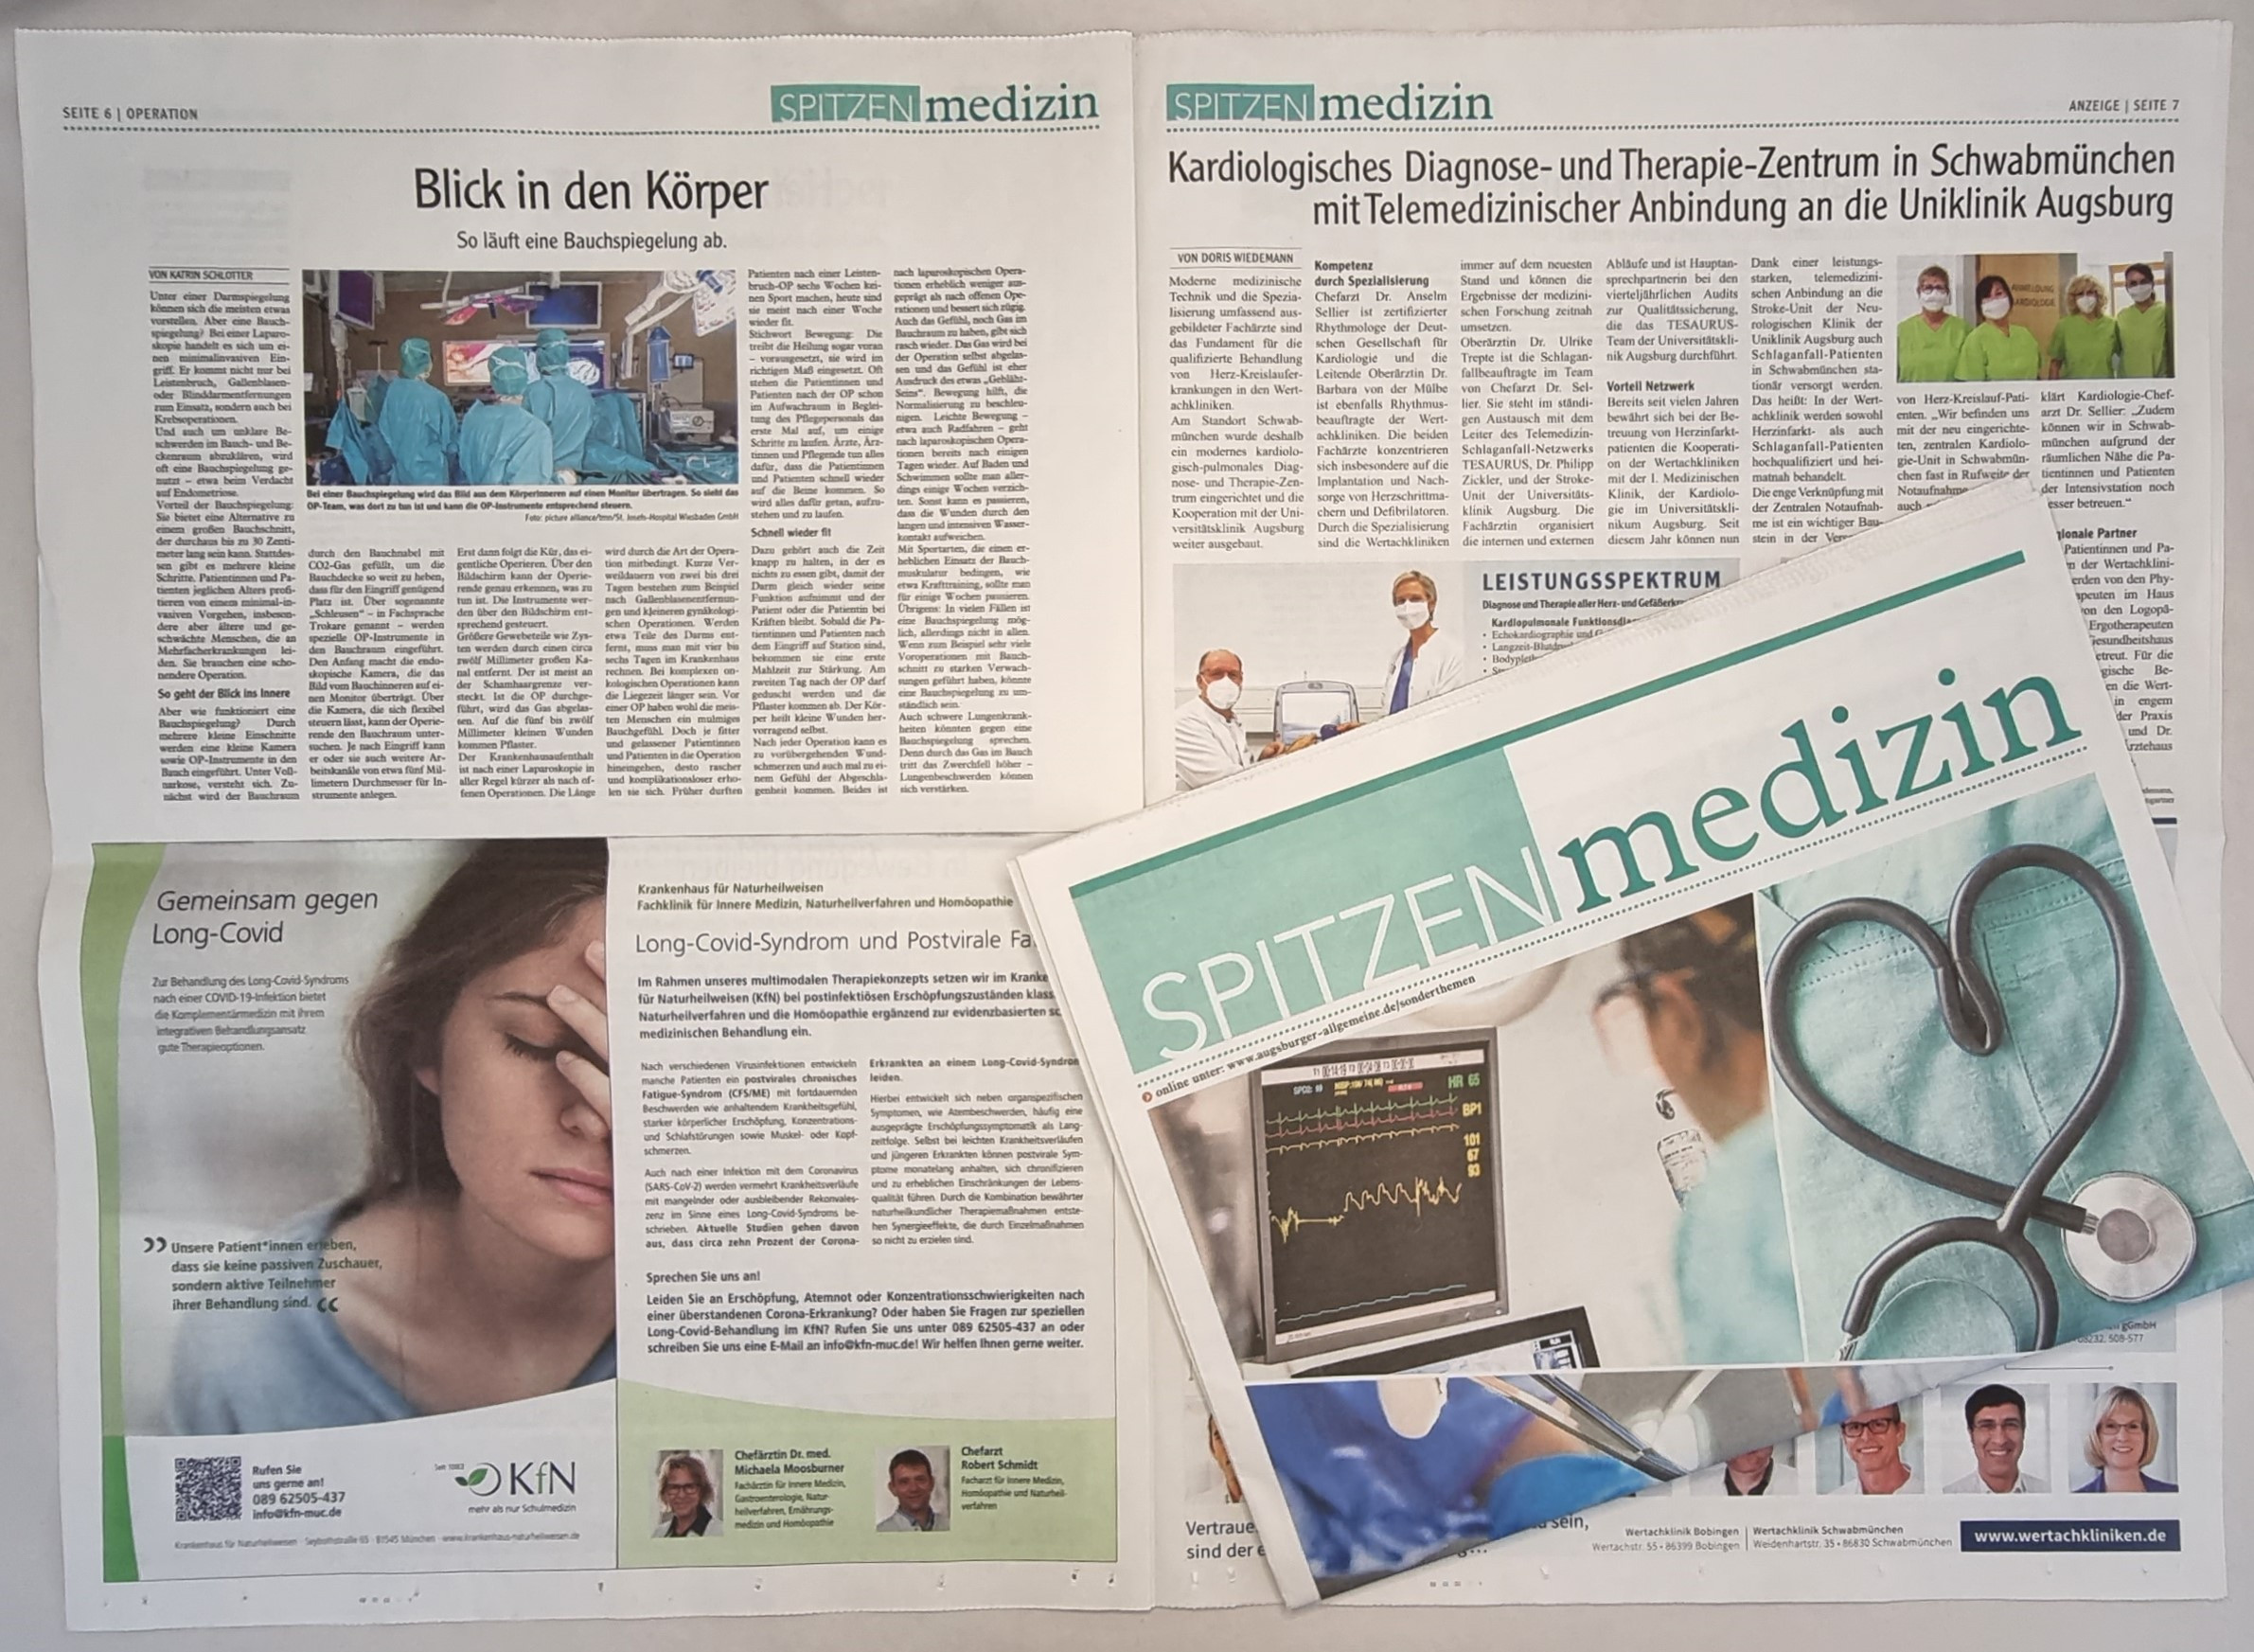 Spitzenmedizin - Eine Beilage der Augsburger Allgemeinen